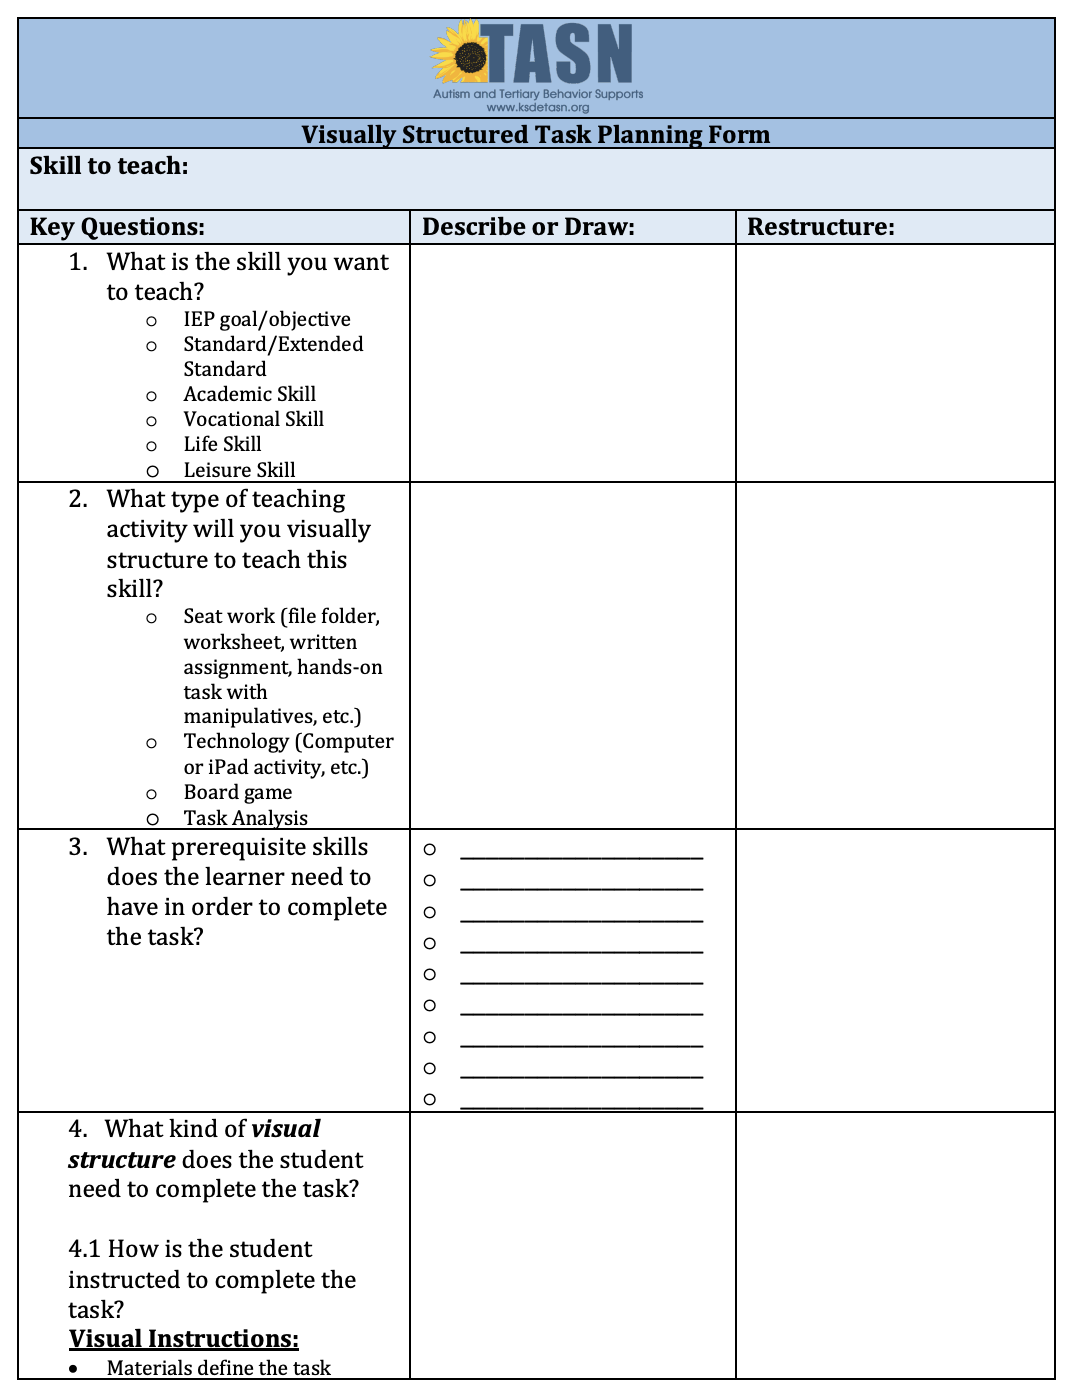 VSOT Planning Form